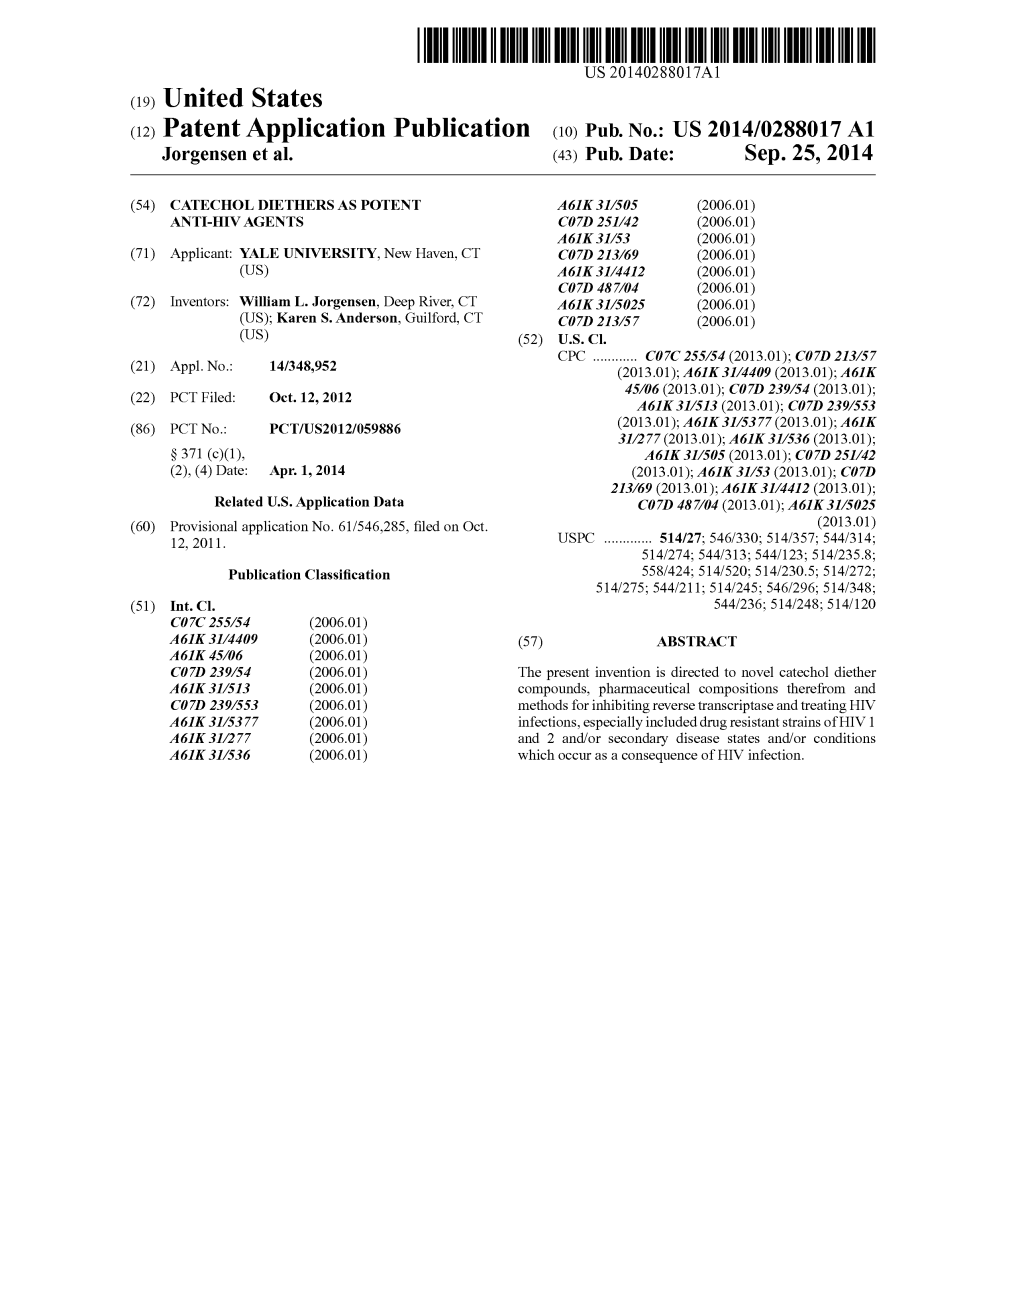 (12) Patent Application Publication (10) Pub. No.: US 2014/0288017 A1 Jorgensen Et Al